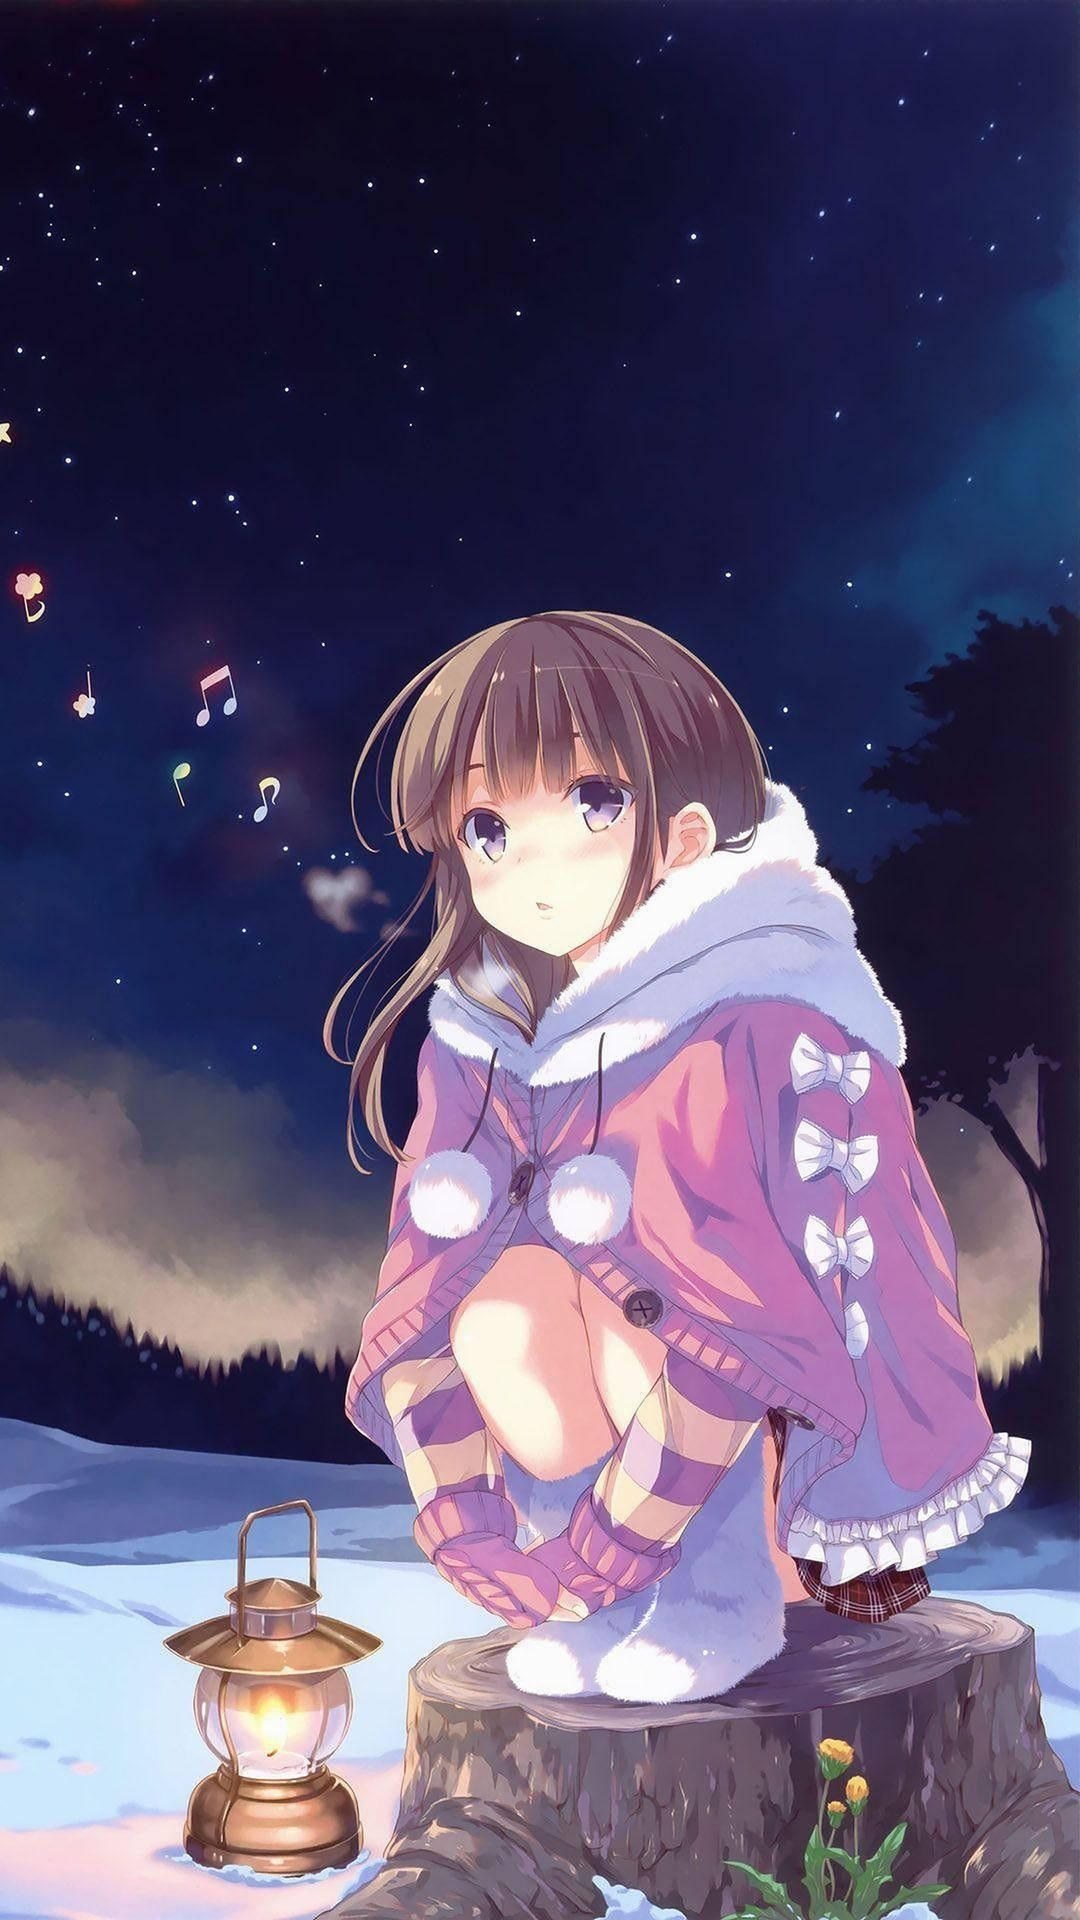 Cute Anime Girl Winter Forest Desktop Wallpaper - Anime Wallpaper